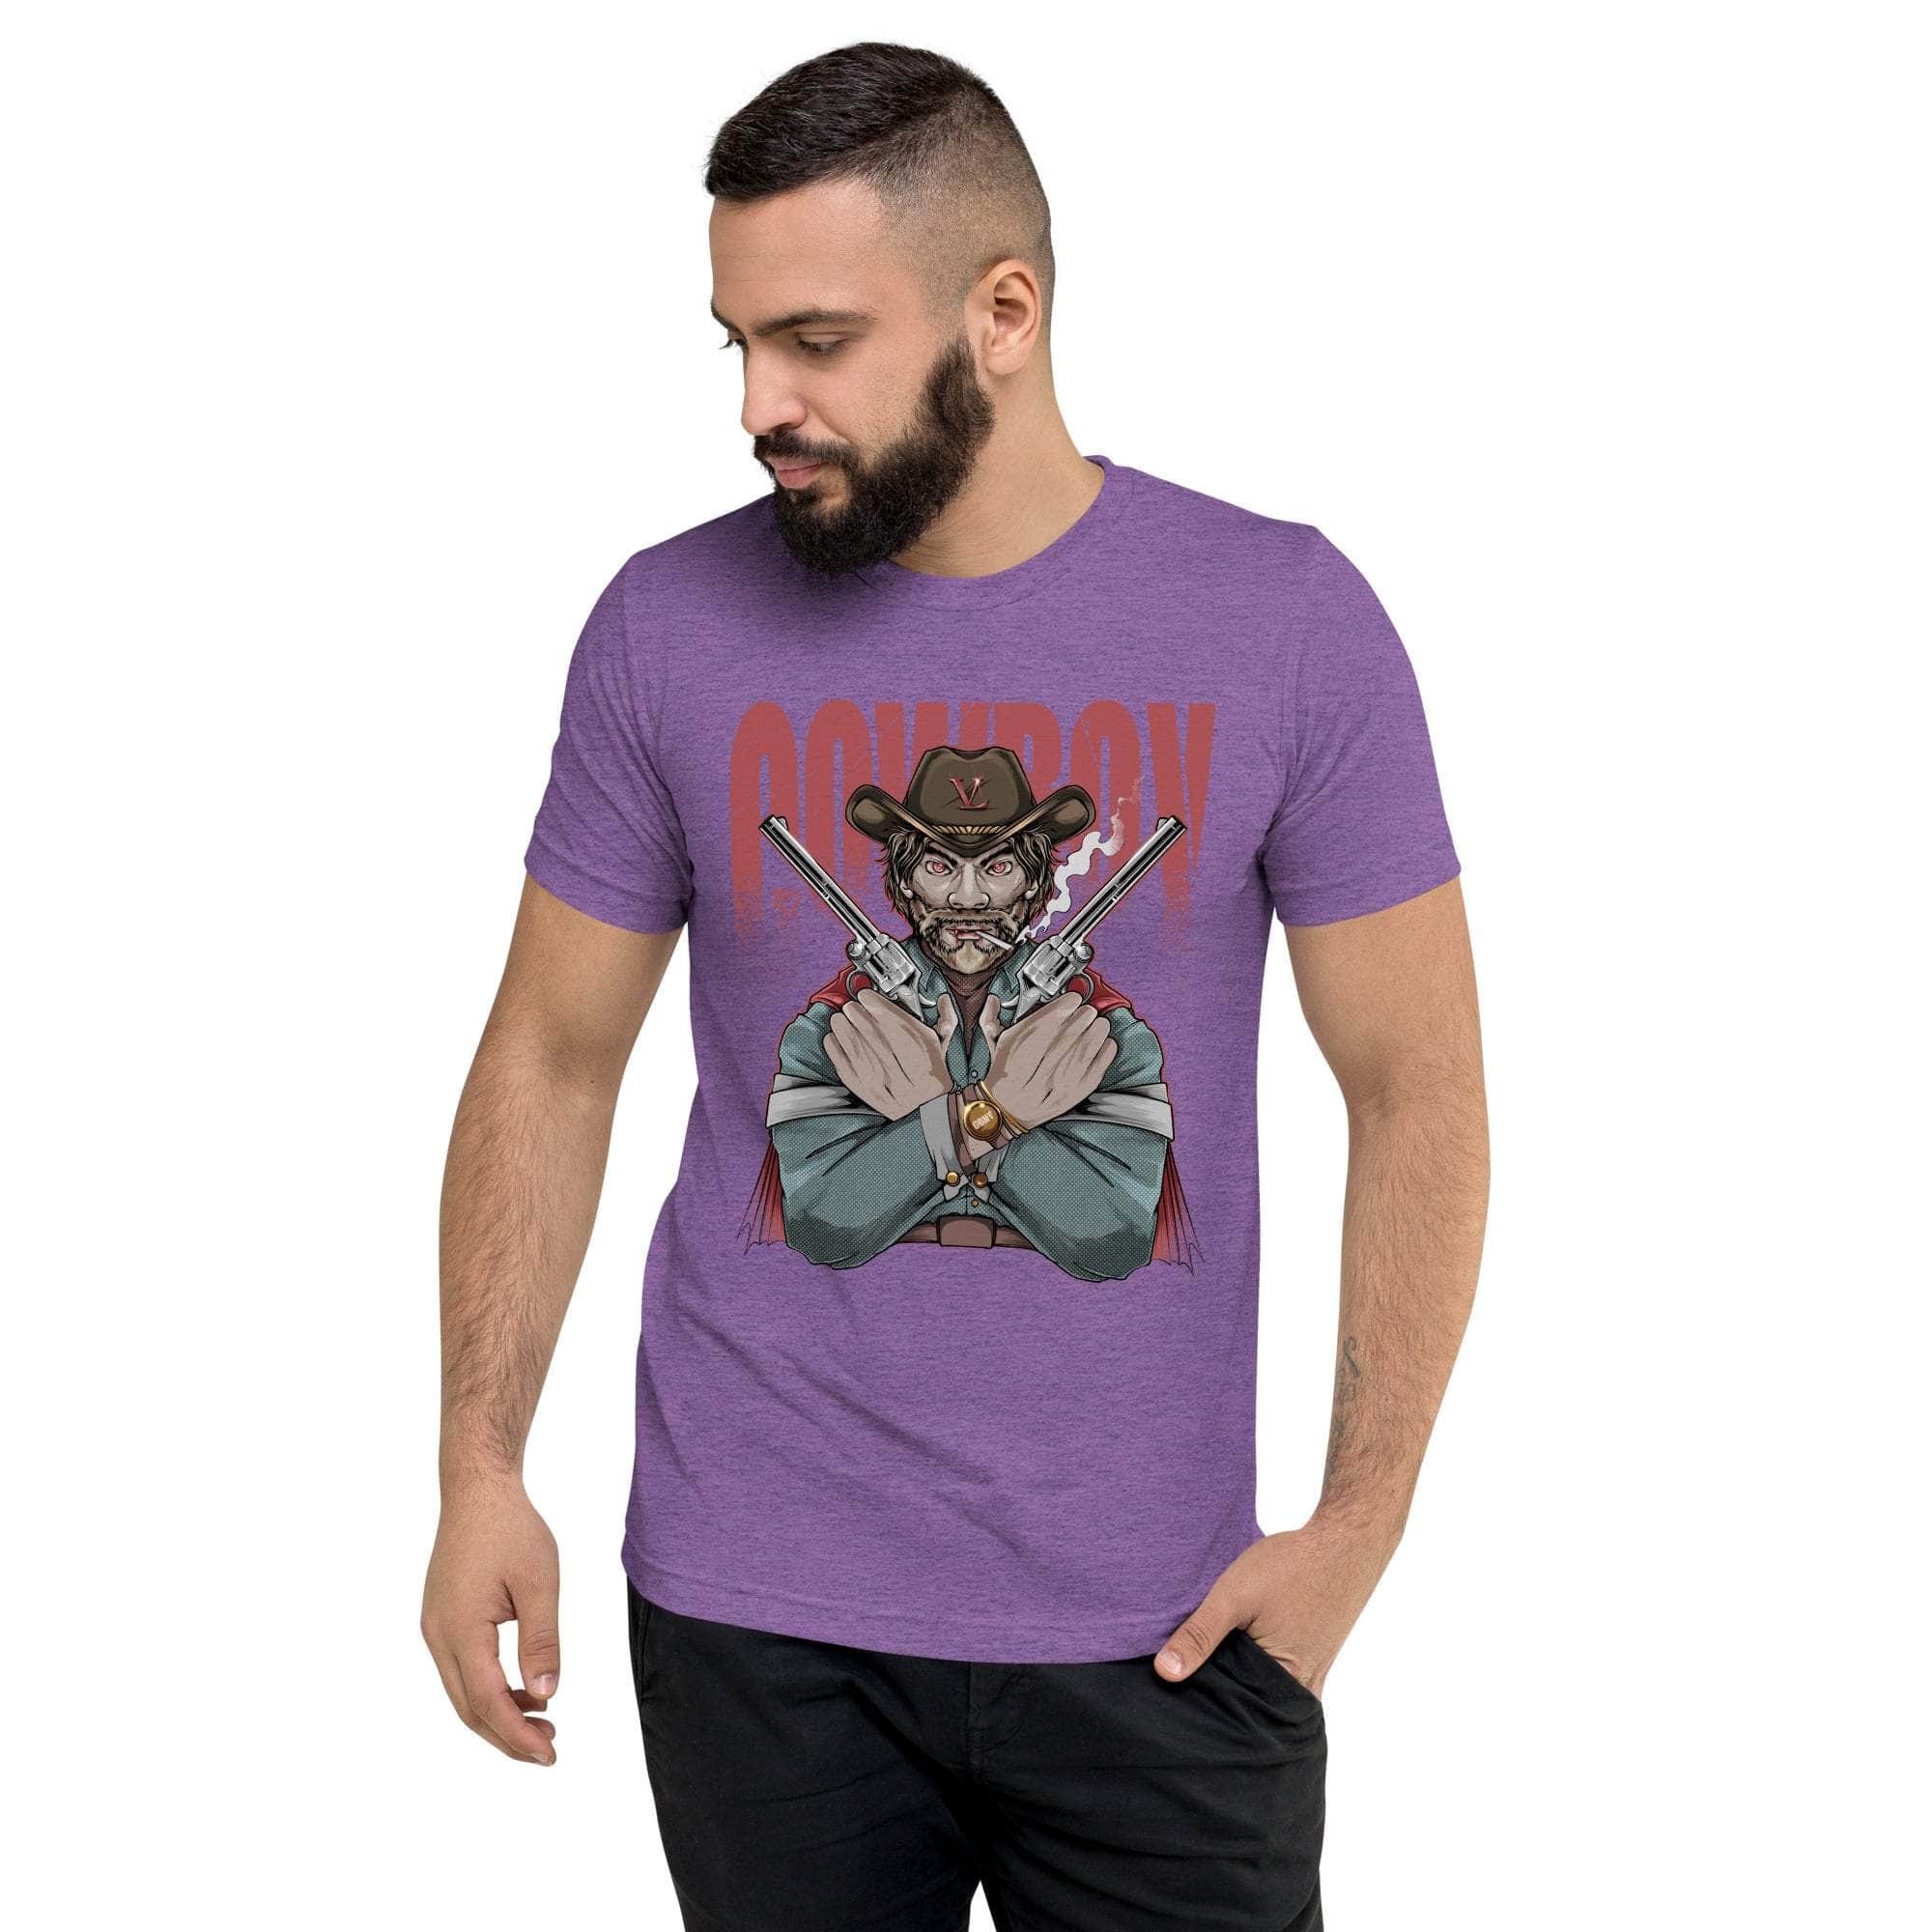 GBNY Purple Triblend / XS Vamp Life X GBNY "Cow Boy" T-shirt - Men's 2714713_6568